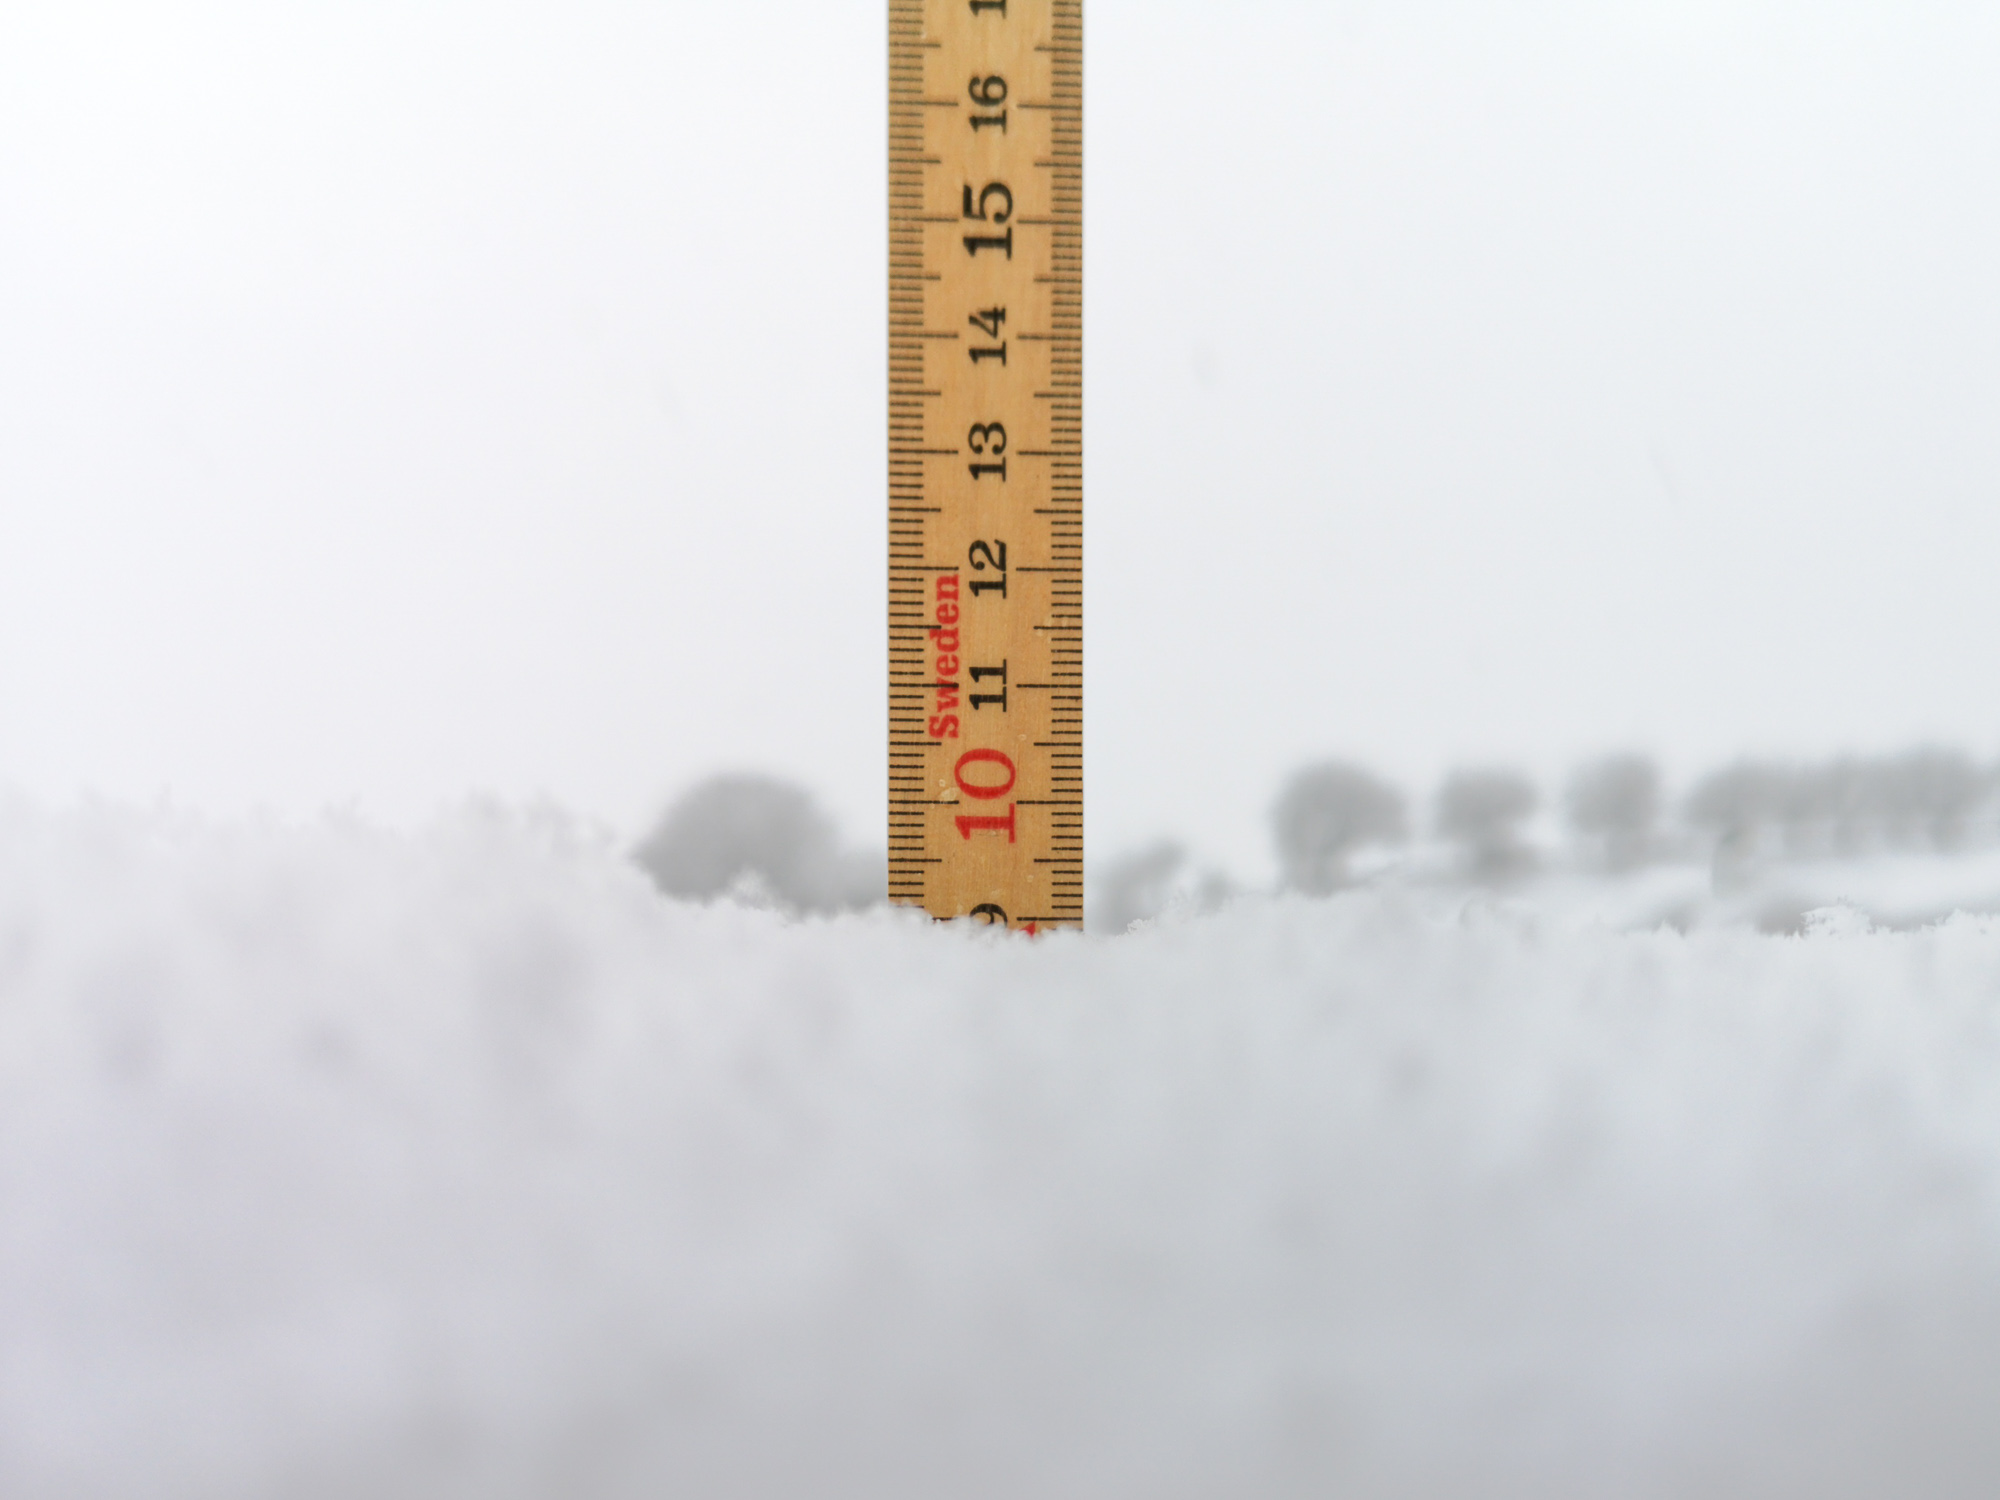 Aktuelle Schneehöhe vom 10. Januar 2019 in Elfingen Aargau